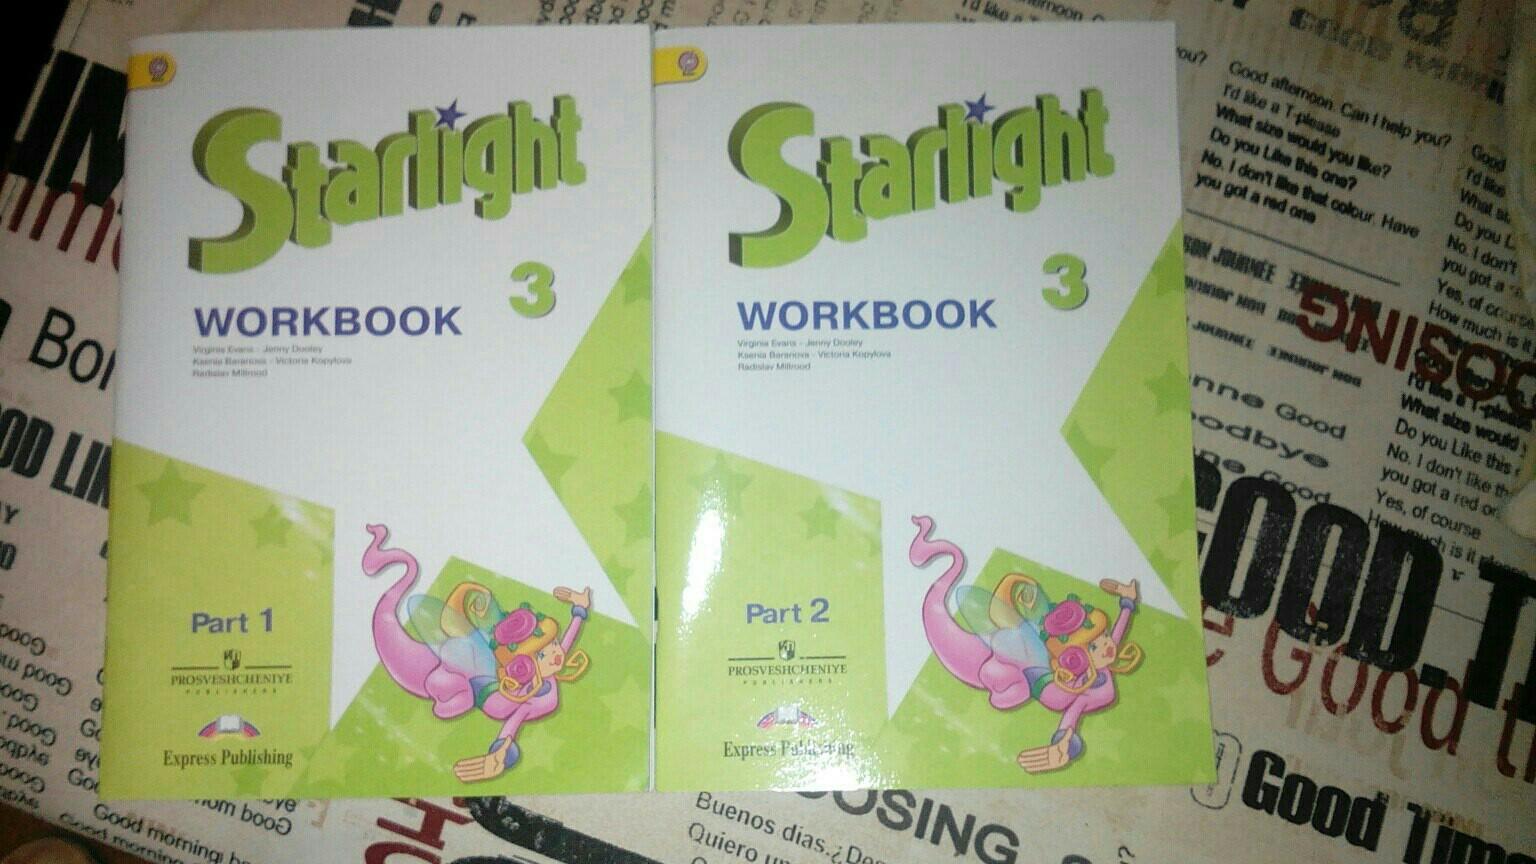 Английский шестой класс страница 11. Starlight 4 Workbook Part 1. Spotlight 3 Workbook гдз. Рабочая тетрадь для закрепления английский 6 класса.